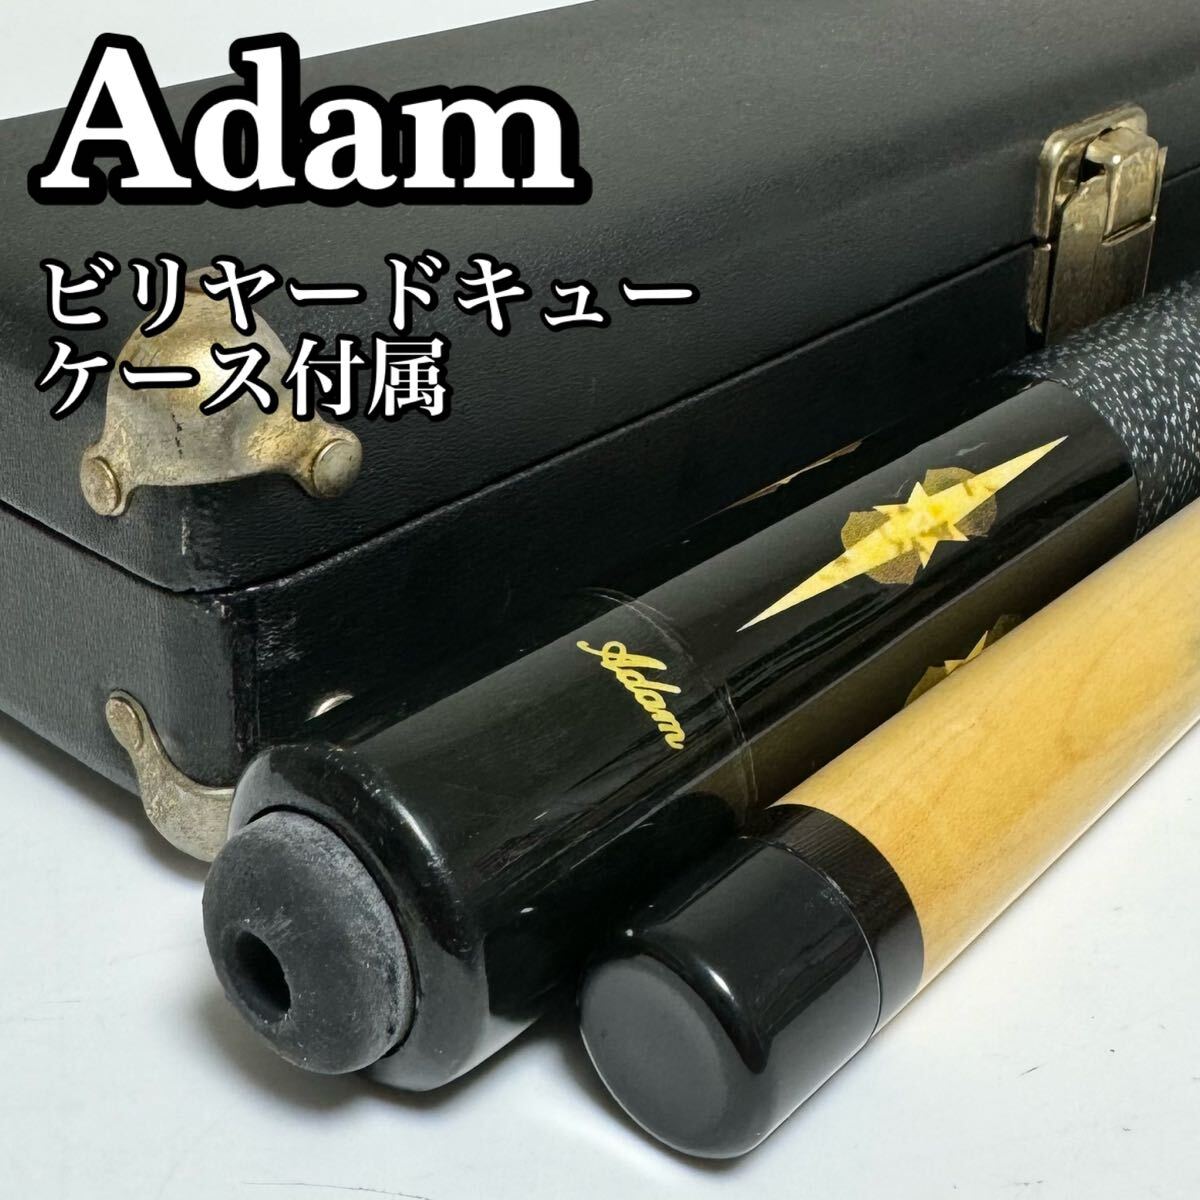 Adam VI アダム ビリヤードキュー VIシリーズ キューケース付属